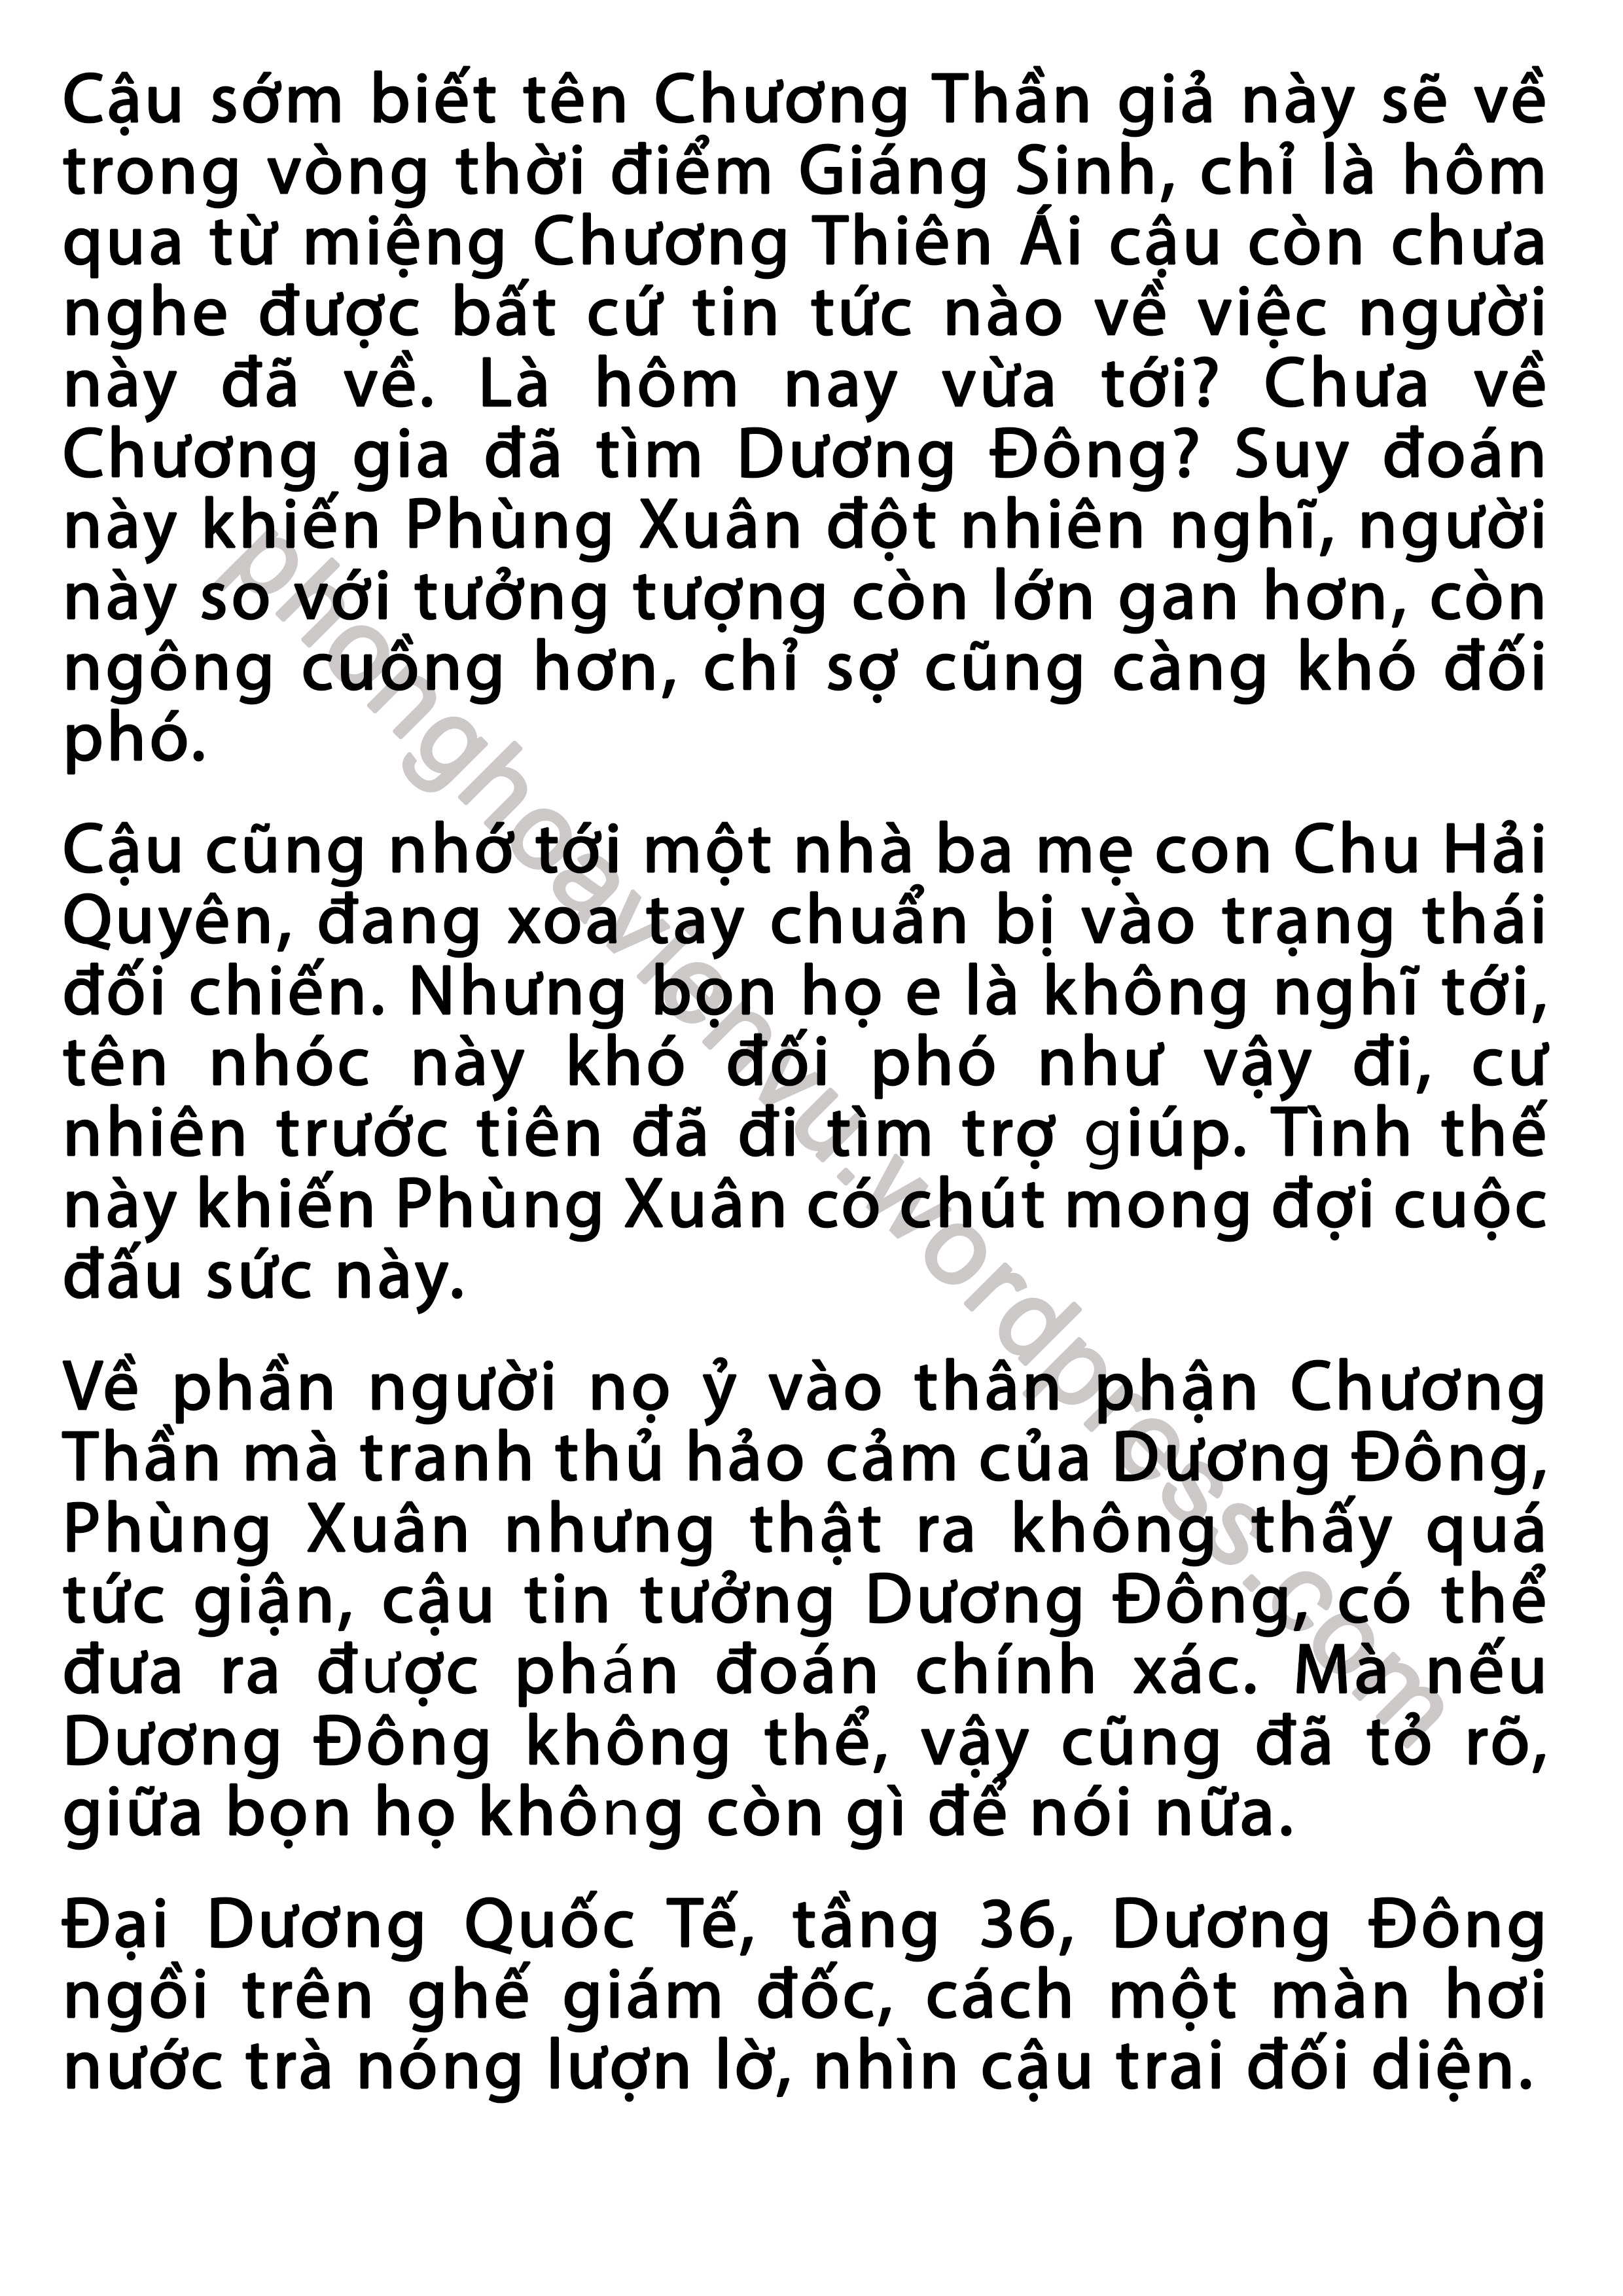 phung-xuan-43-pic6